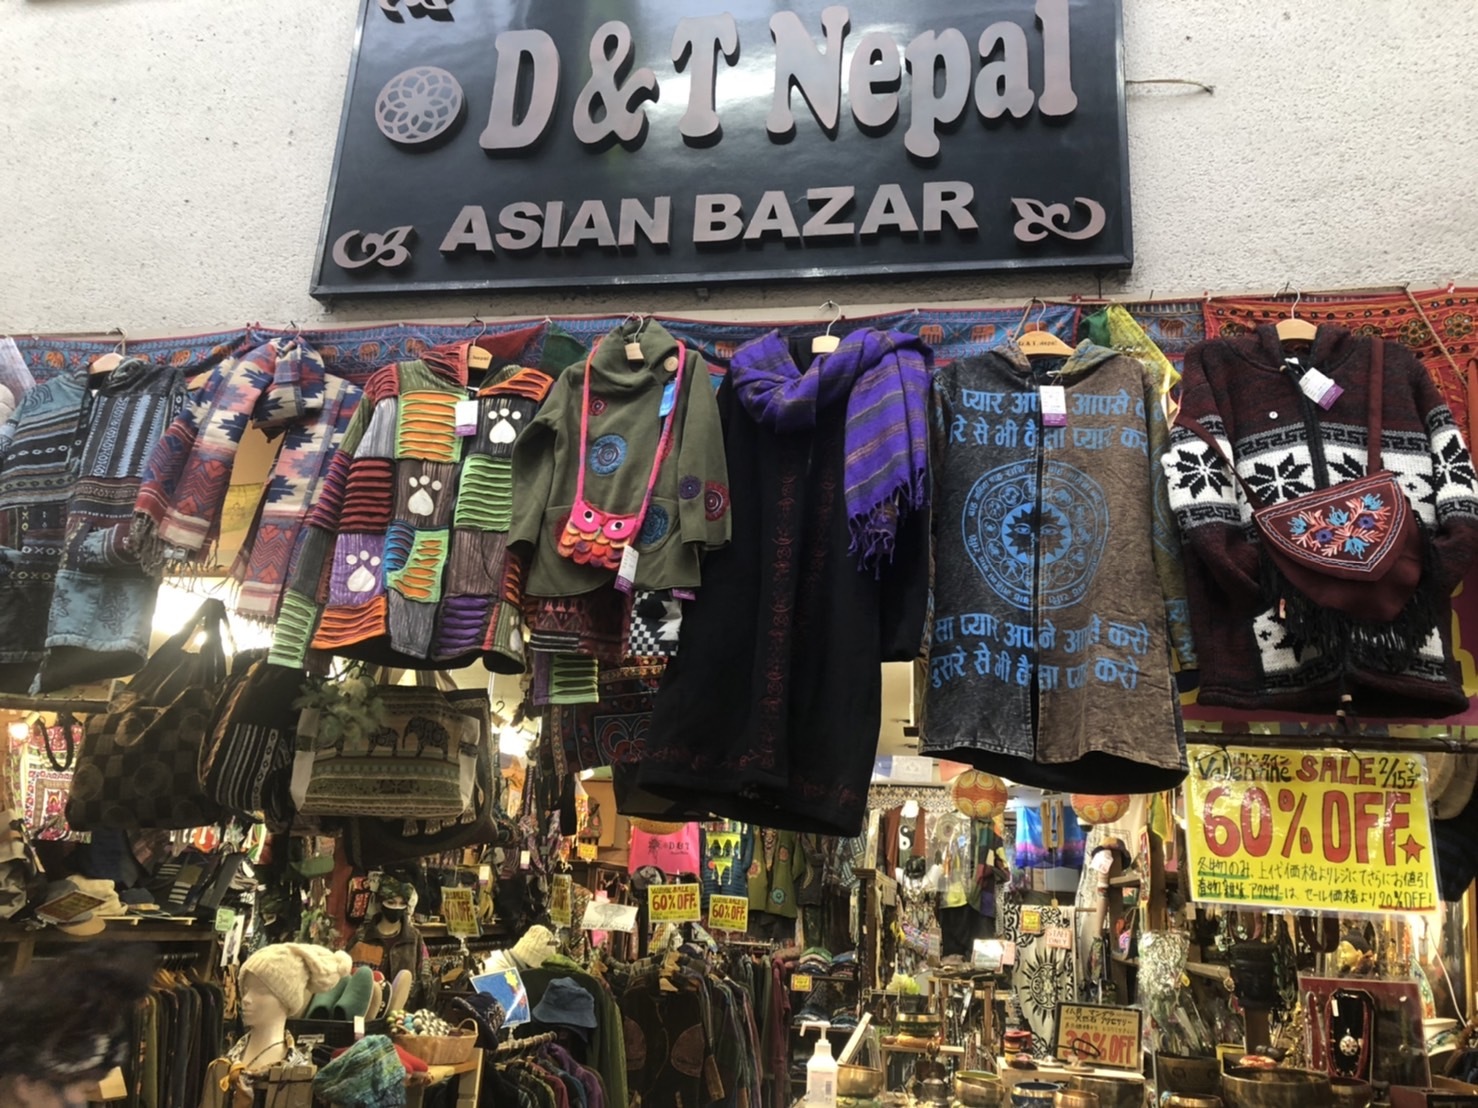 天神橋筋商店街にある「D＆T Nepal」